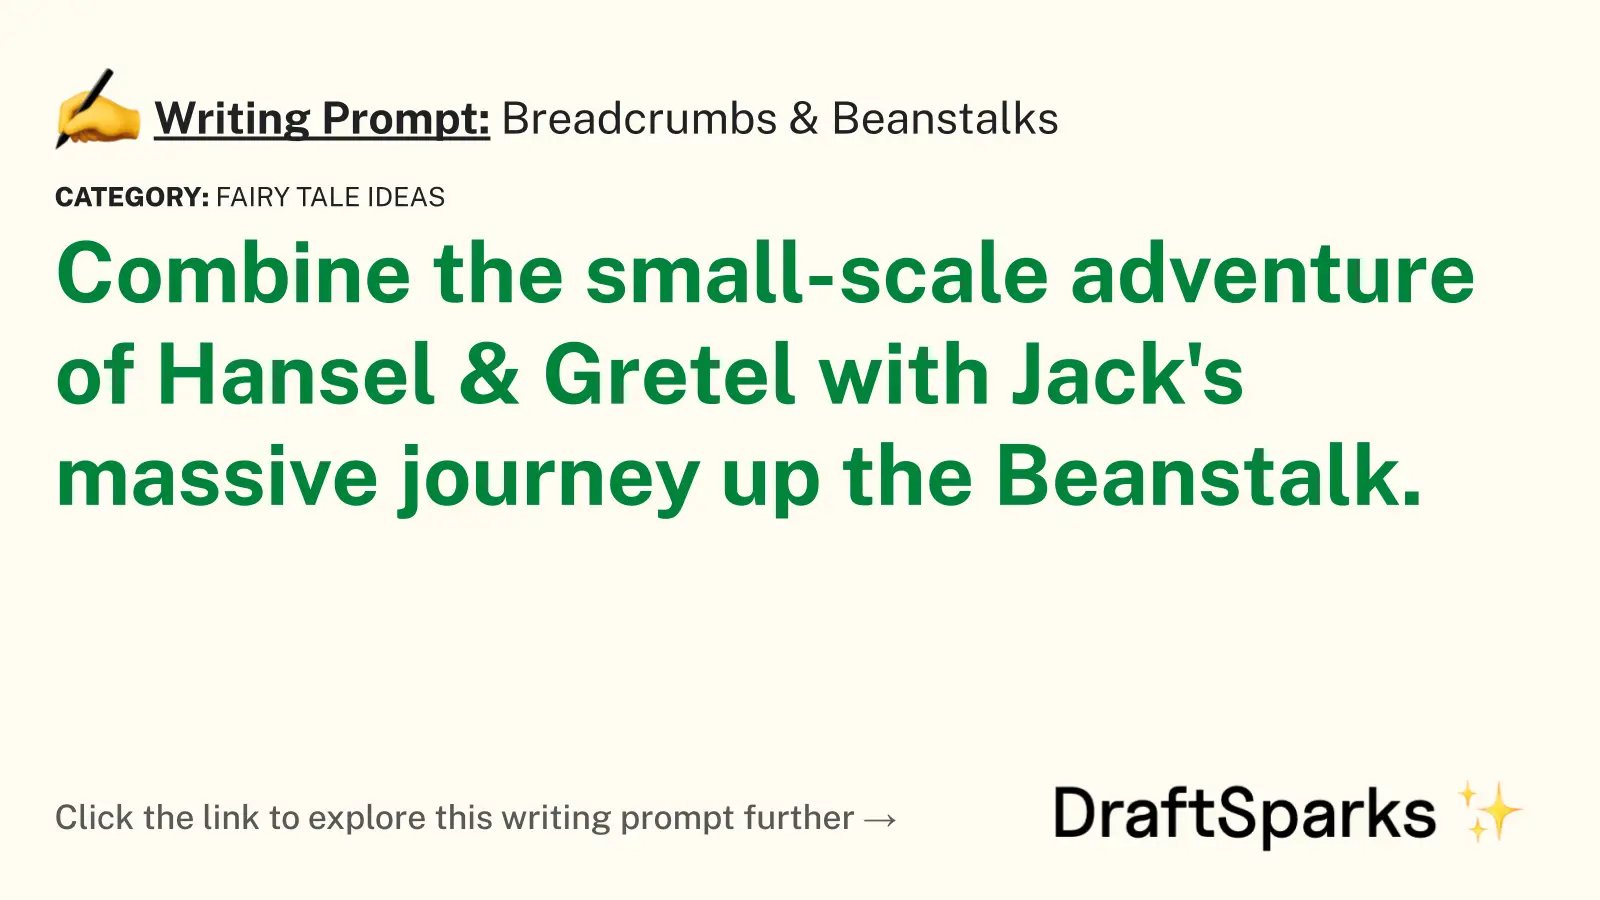 Breadcrumbs & Beanstalks